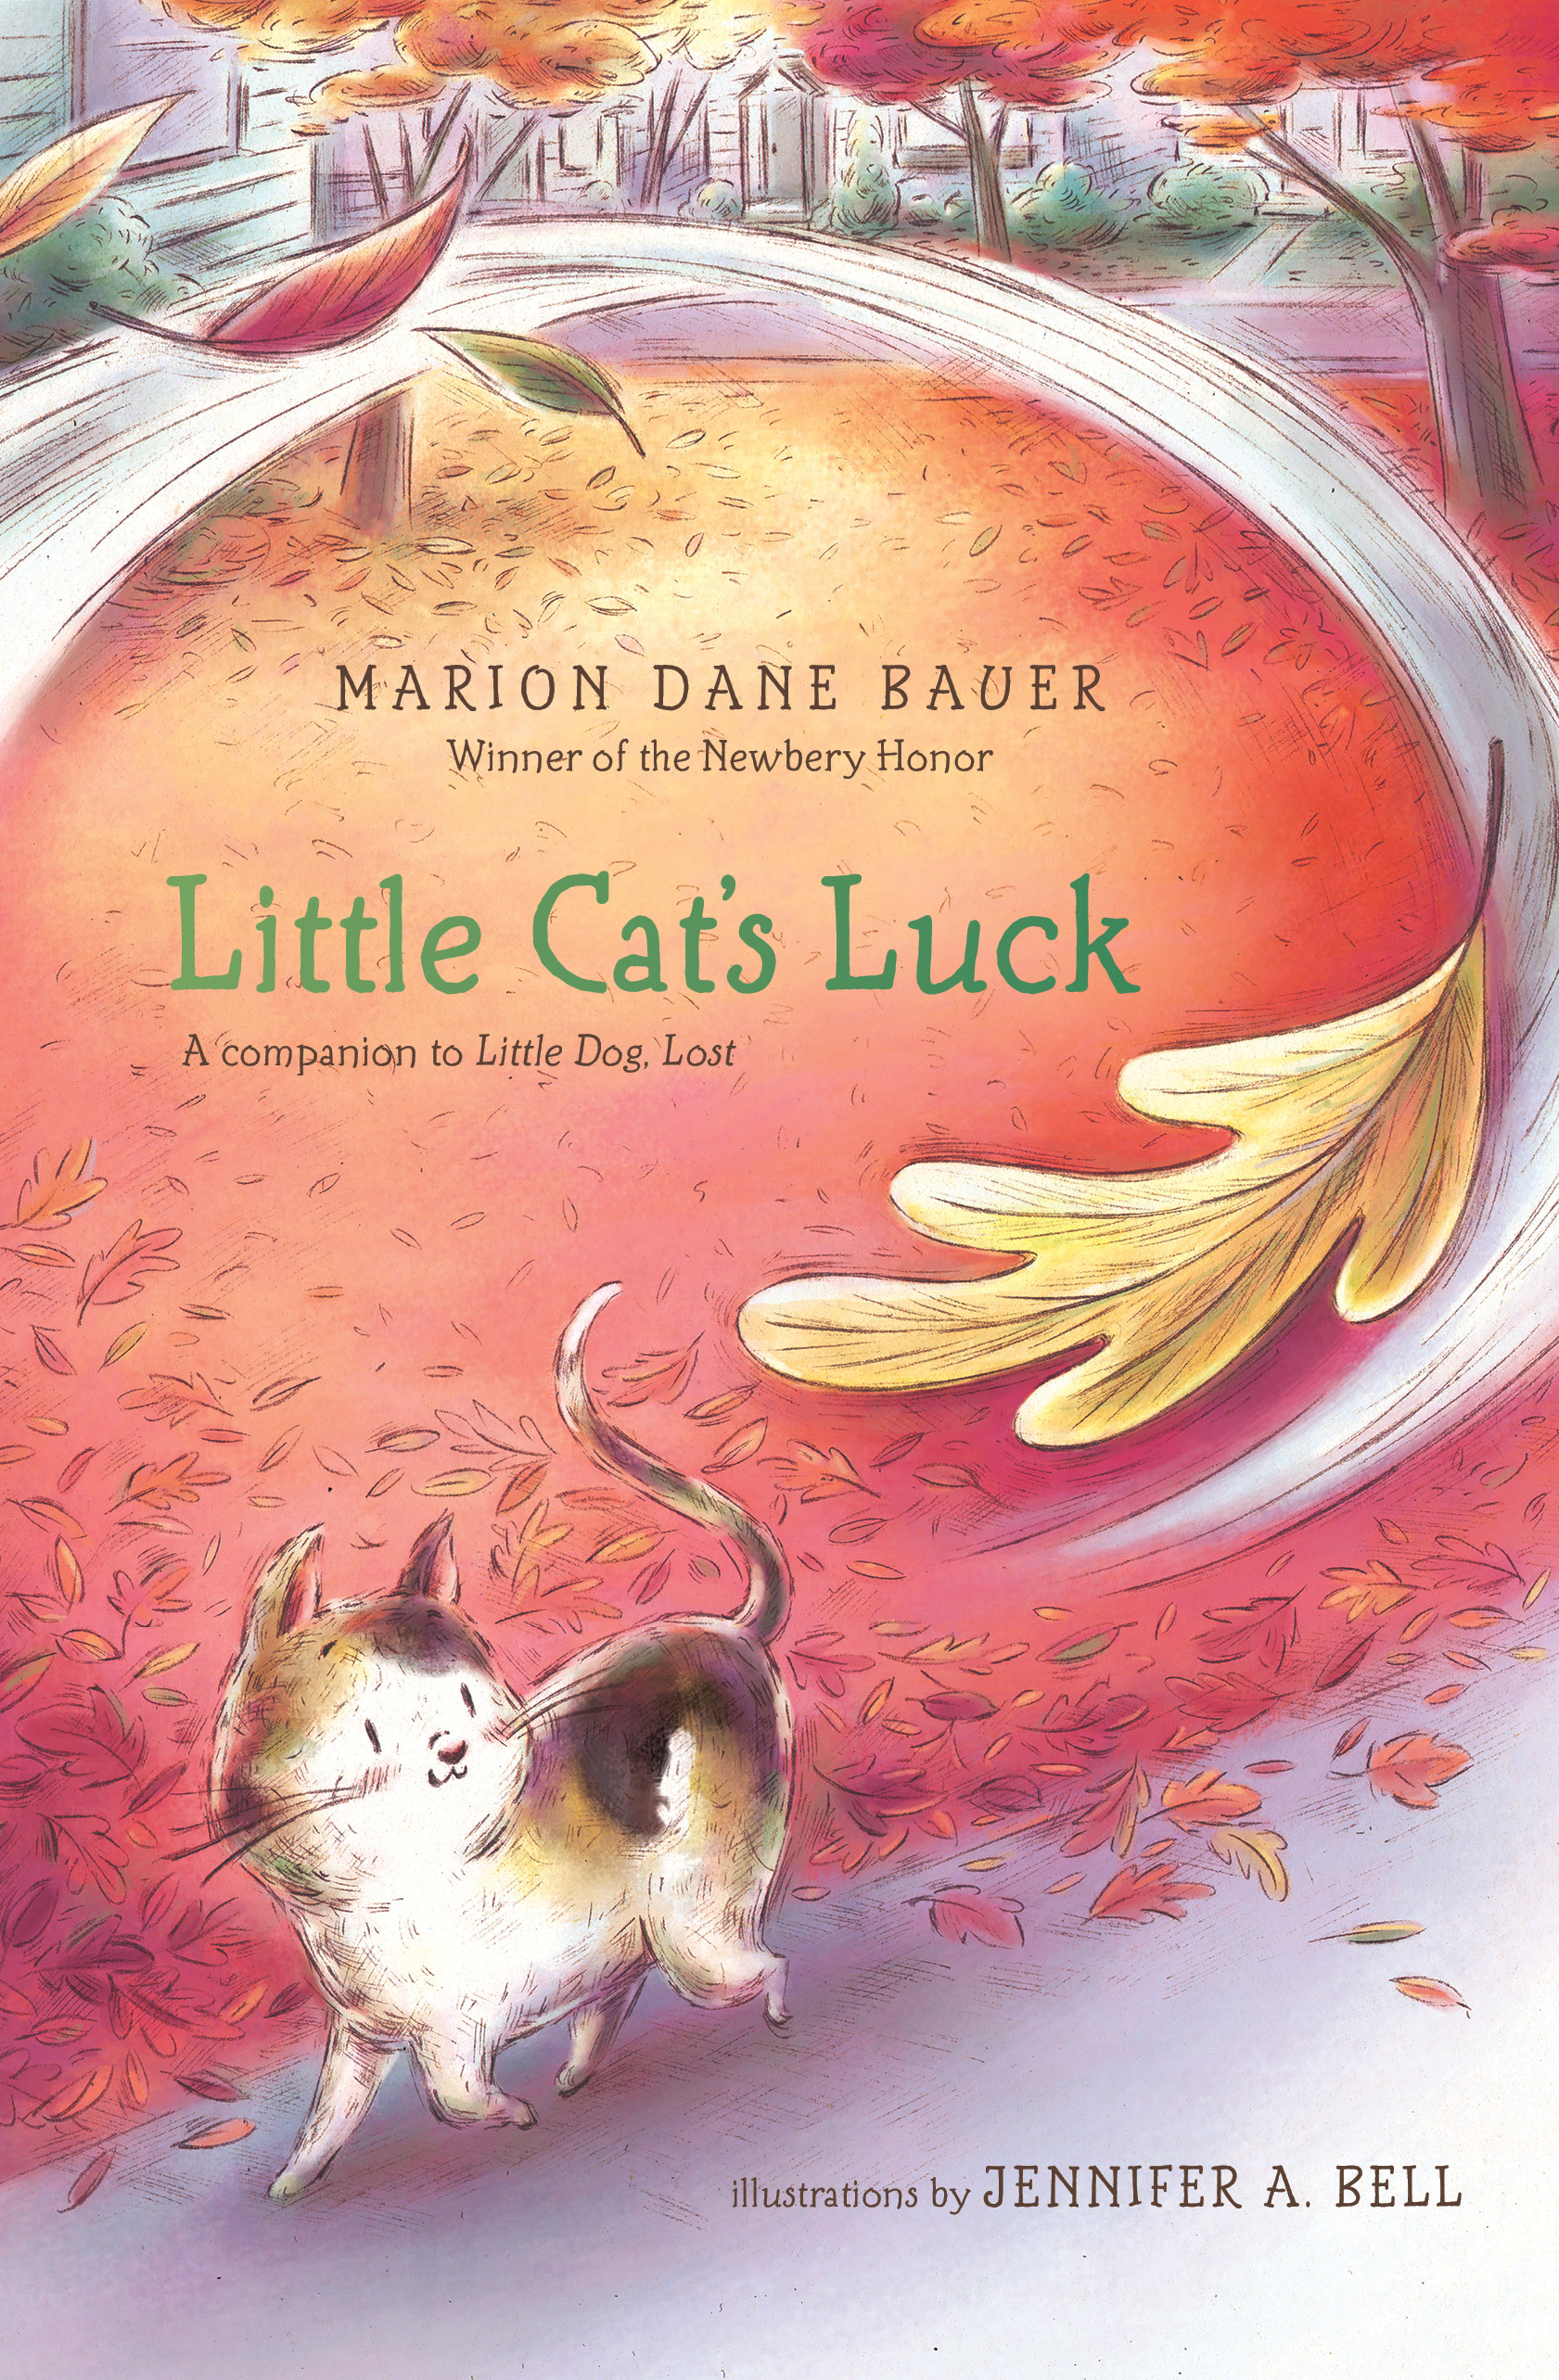 Little Cat’s Luck